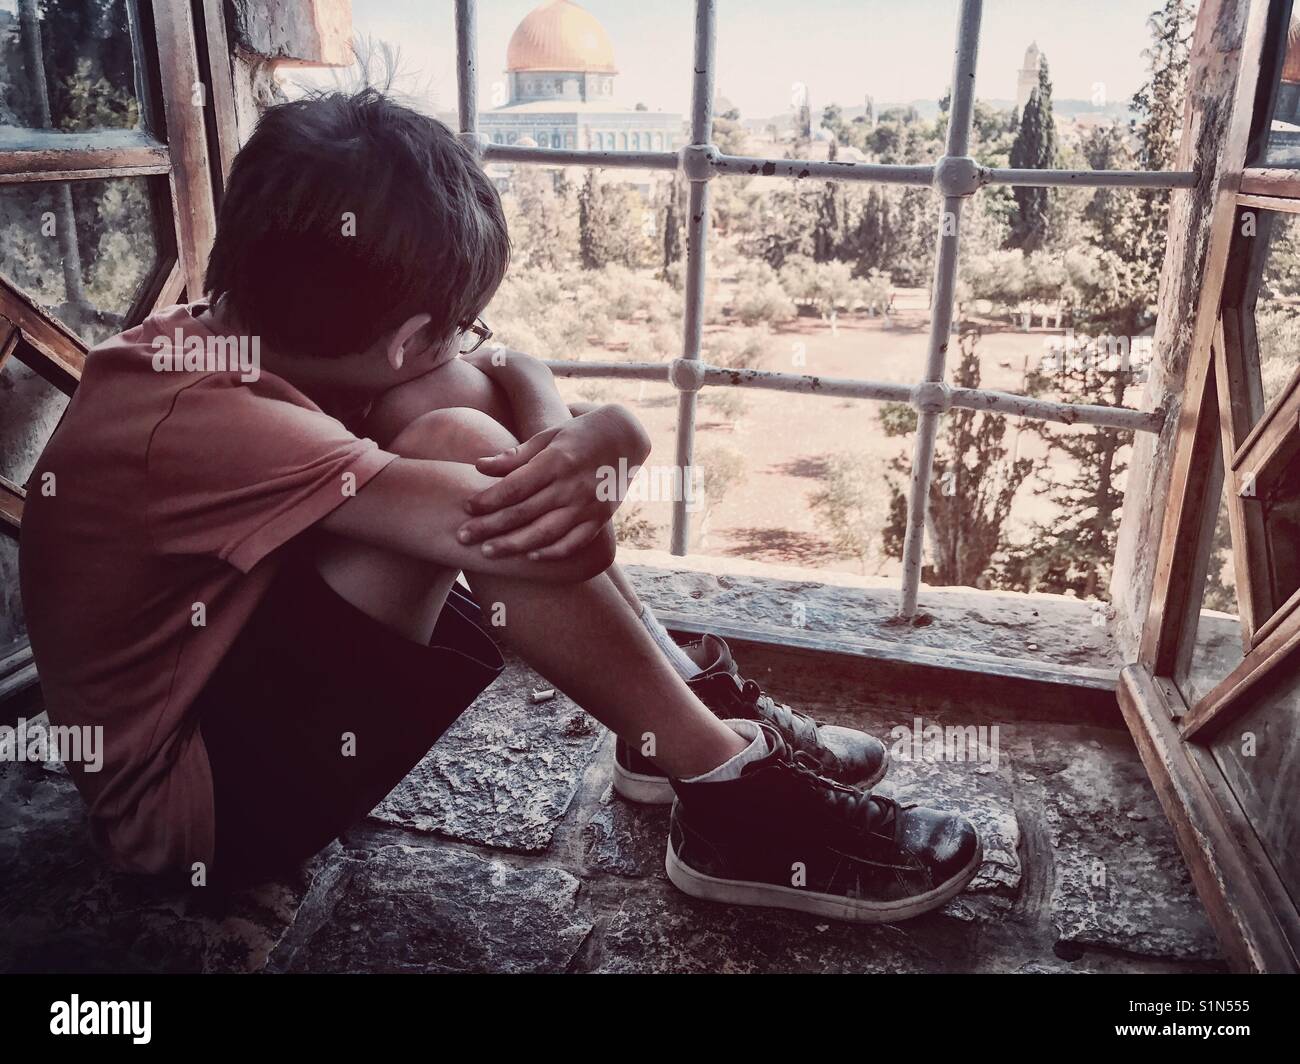 Un jeune garçon regarde par la fenêtre, donnant sur une cour arabe, à travers la fenêtre de l'école primaire de Jérusalem. Banque D'Images